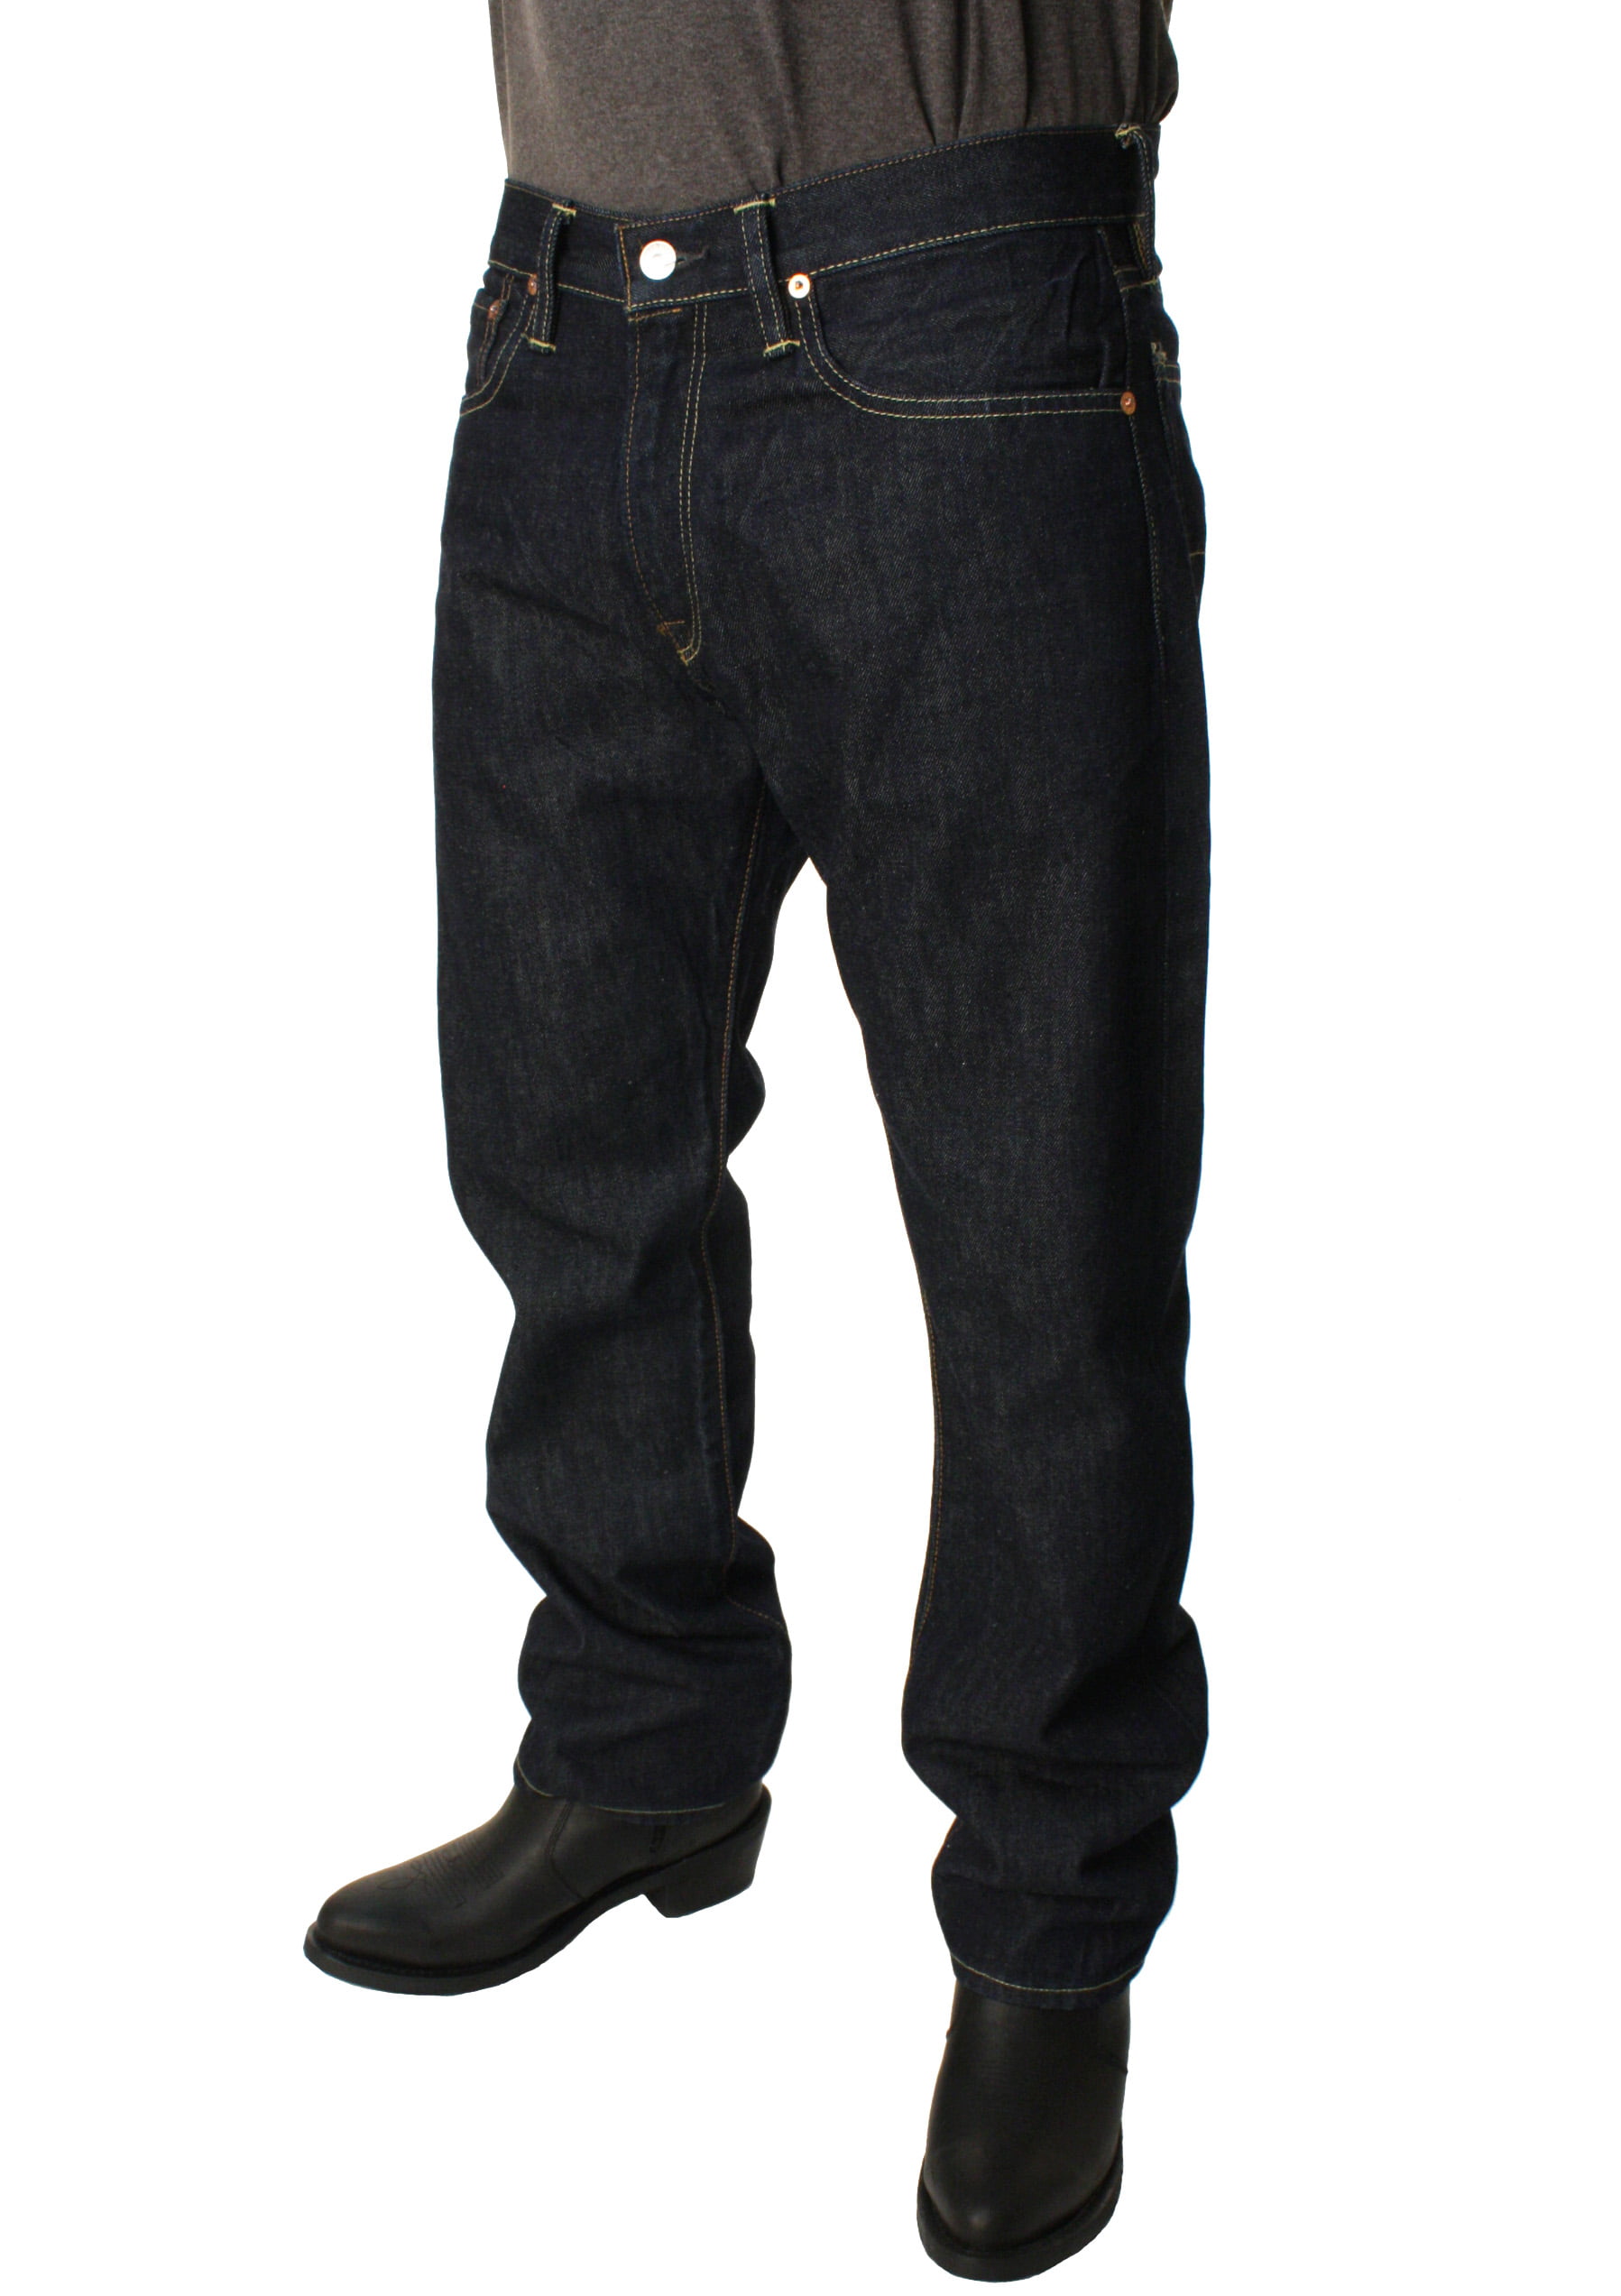 polo ralph lauren jeans classic fit 867